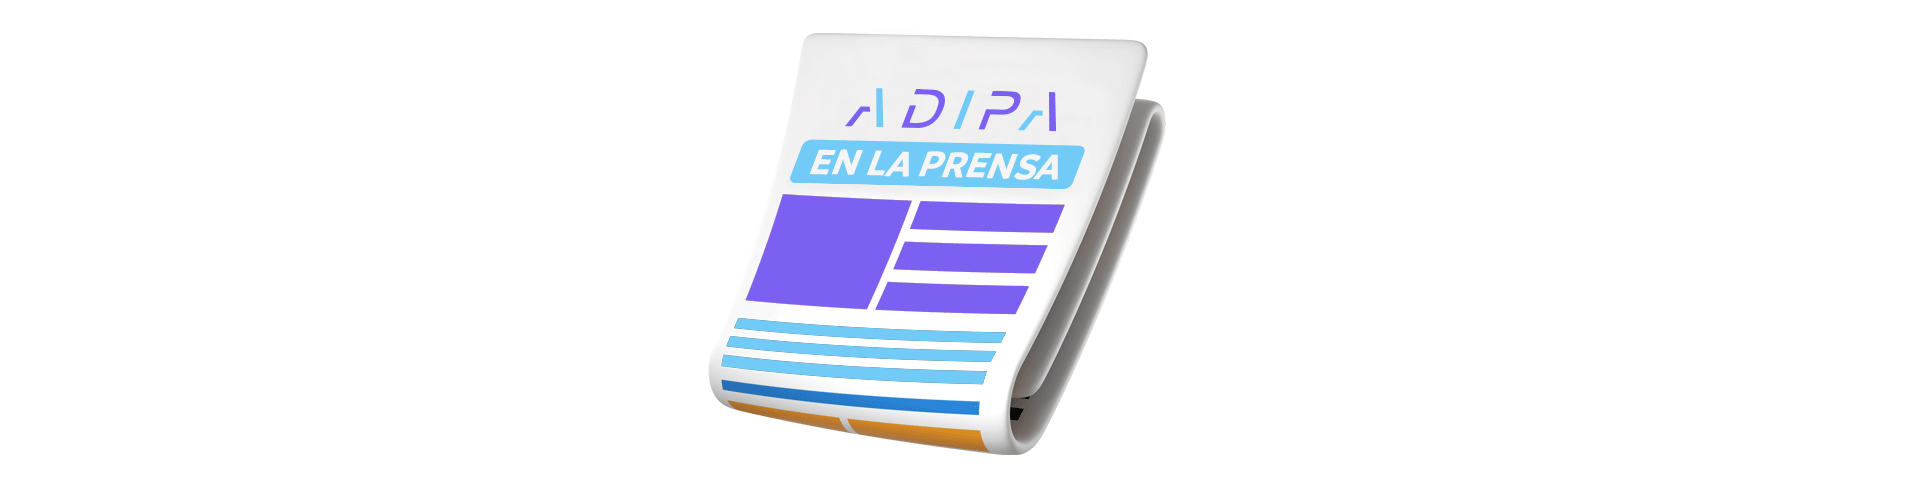 Adipa en la prensa  - ADIPA